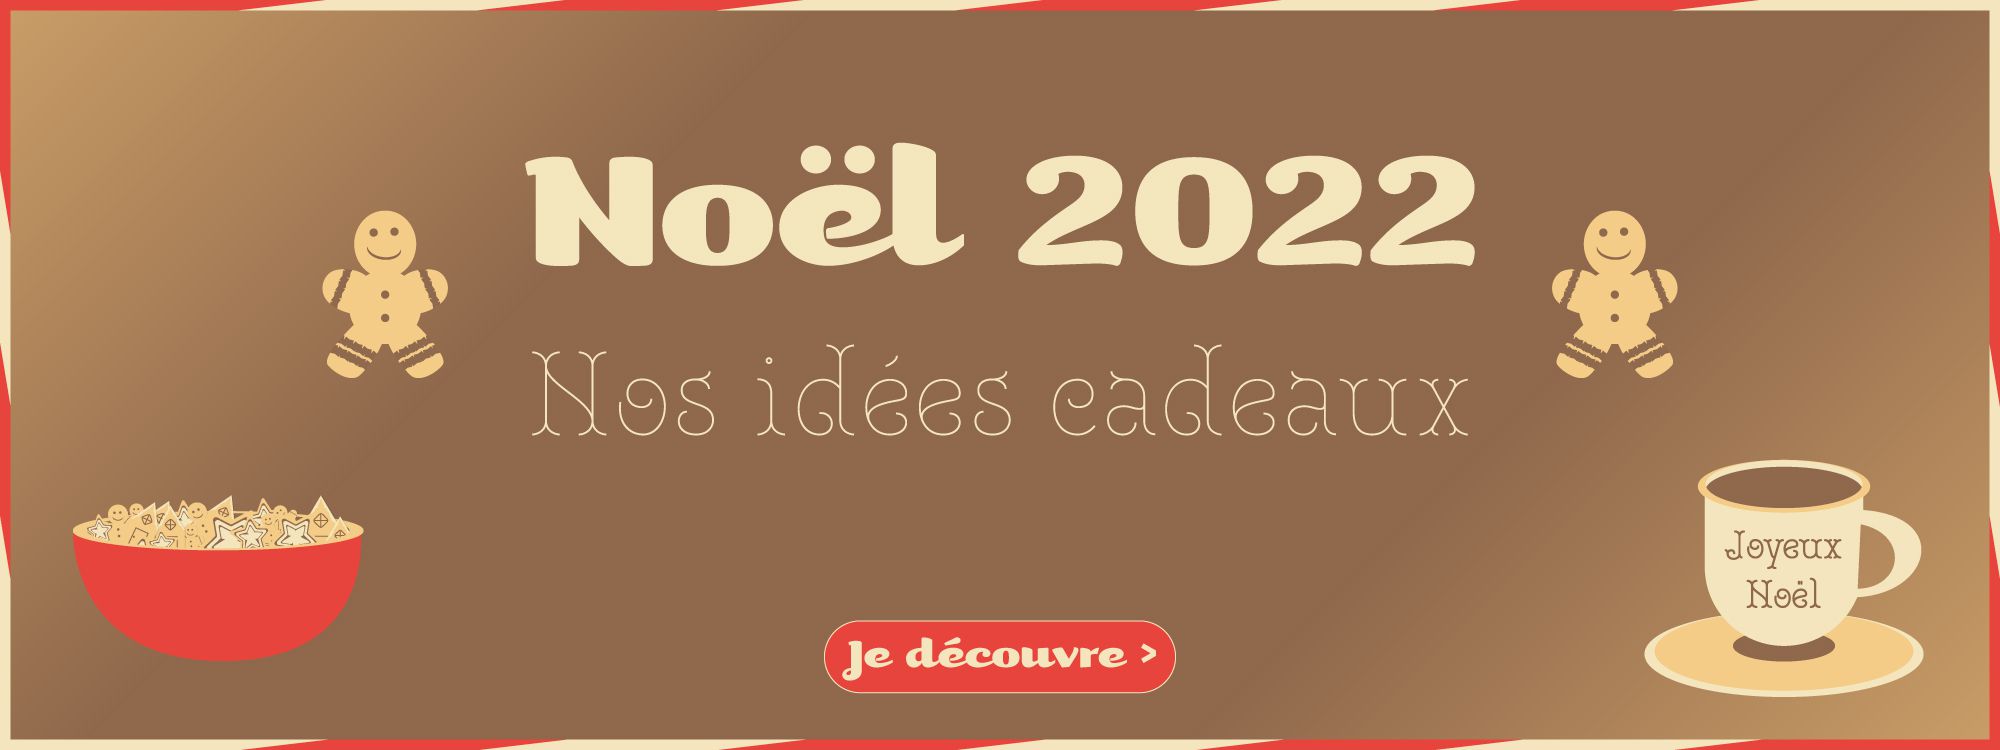 Noel 2022